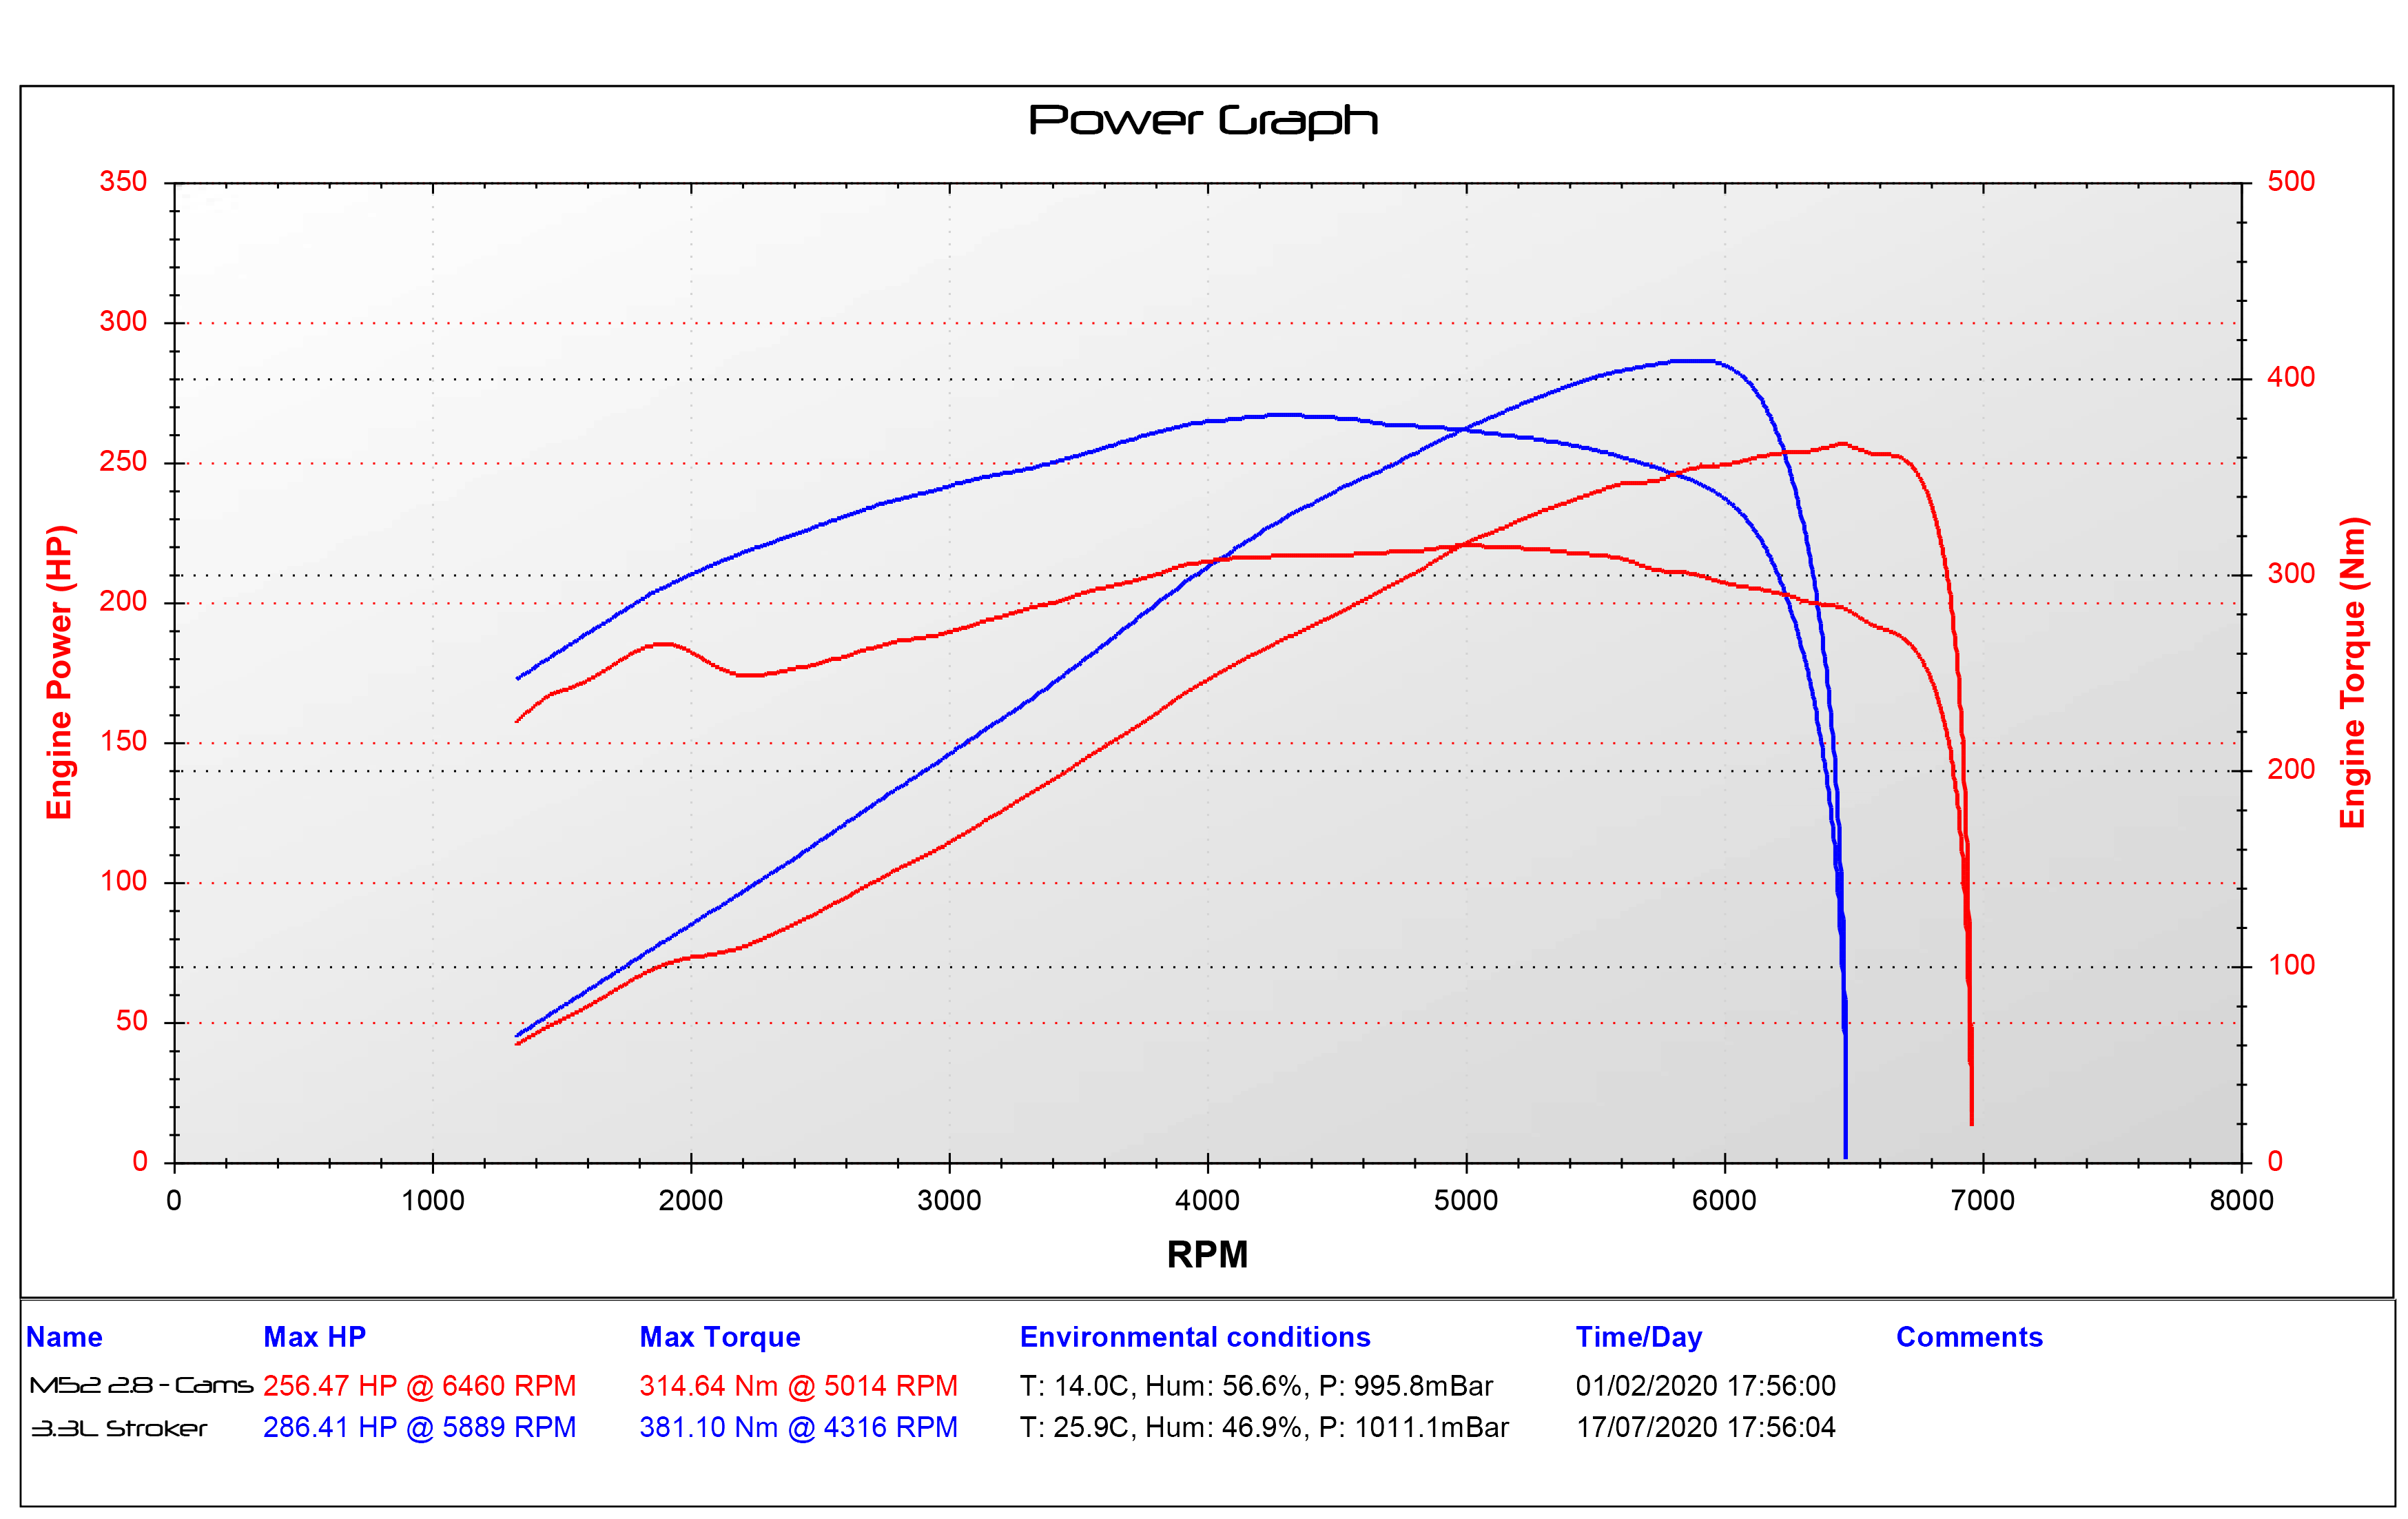 dyno plot, m52 with cams vs 3.3l stroker